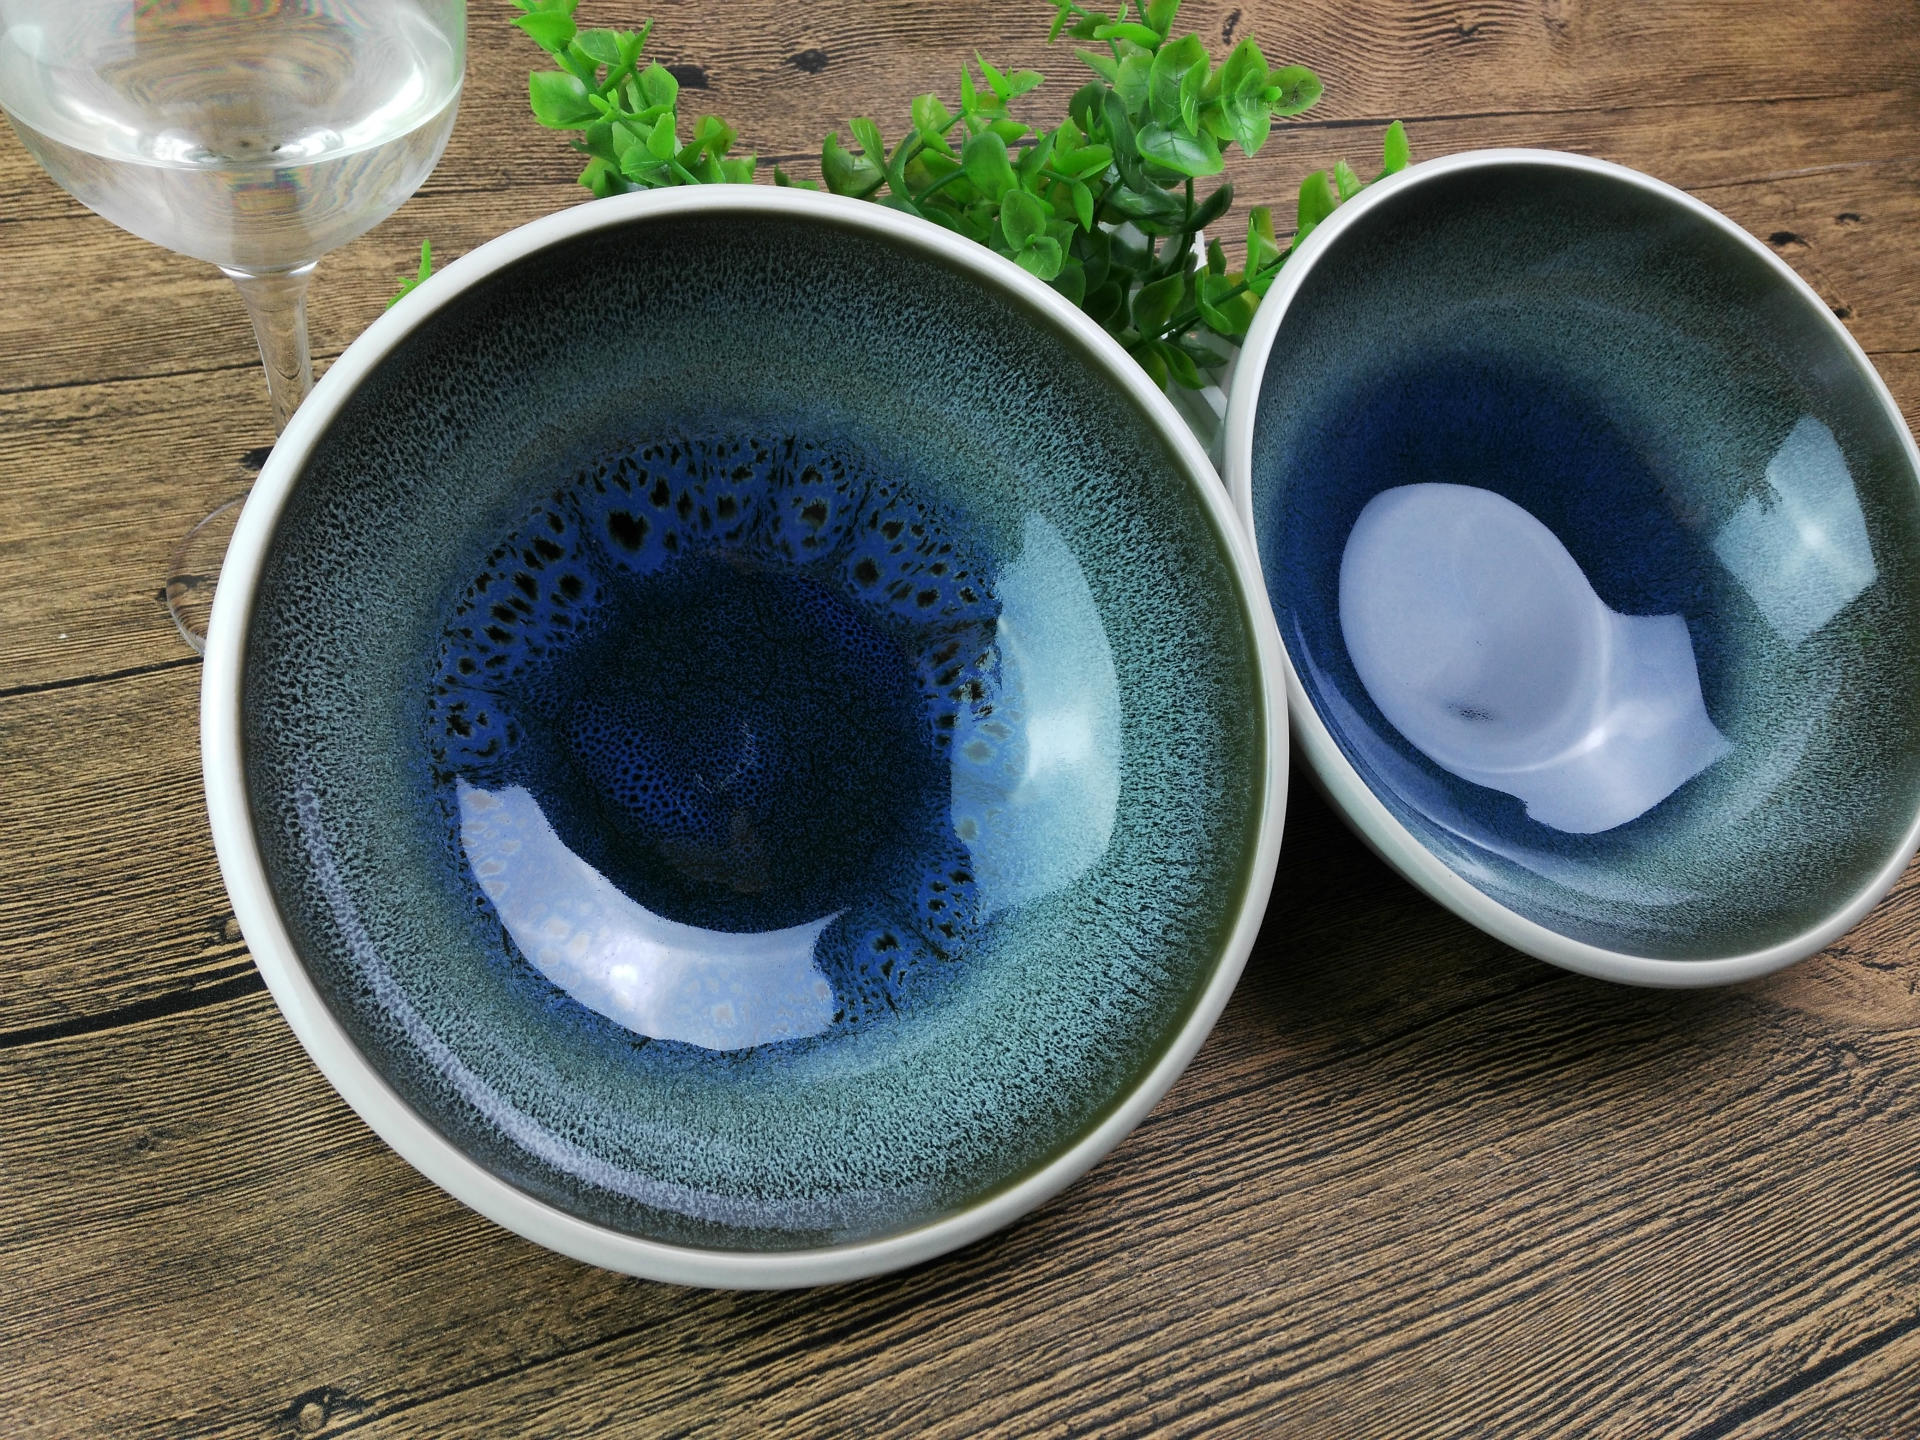 尾单 陶瓷可爱鱼盘日式个性家用创意北欧风鱼盘子菜盘装鱼盘碟子-阿里巴巴